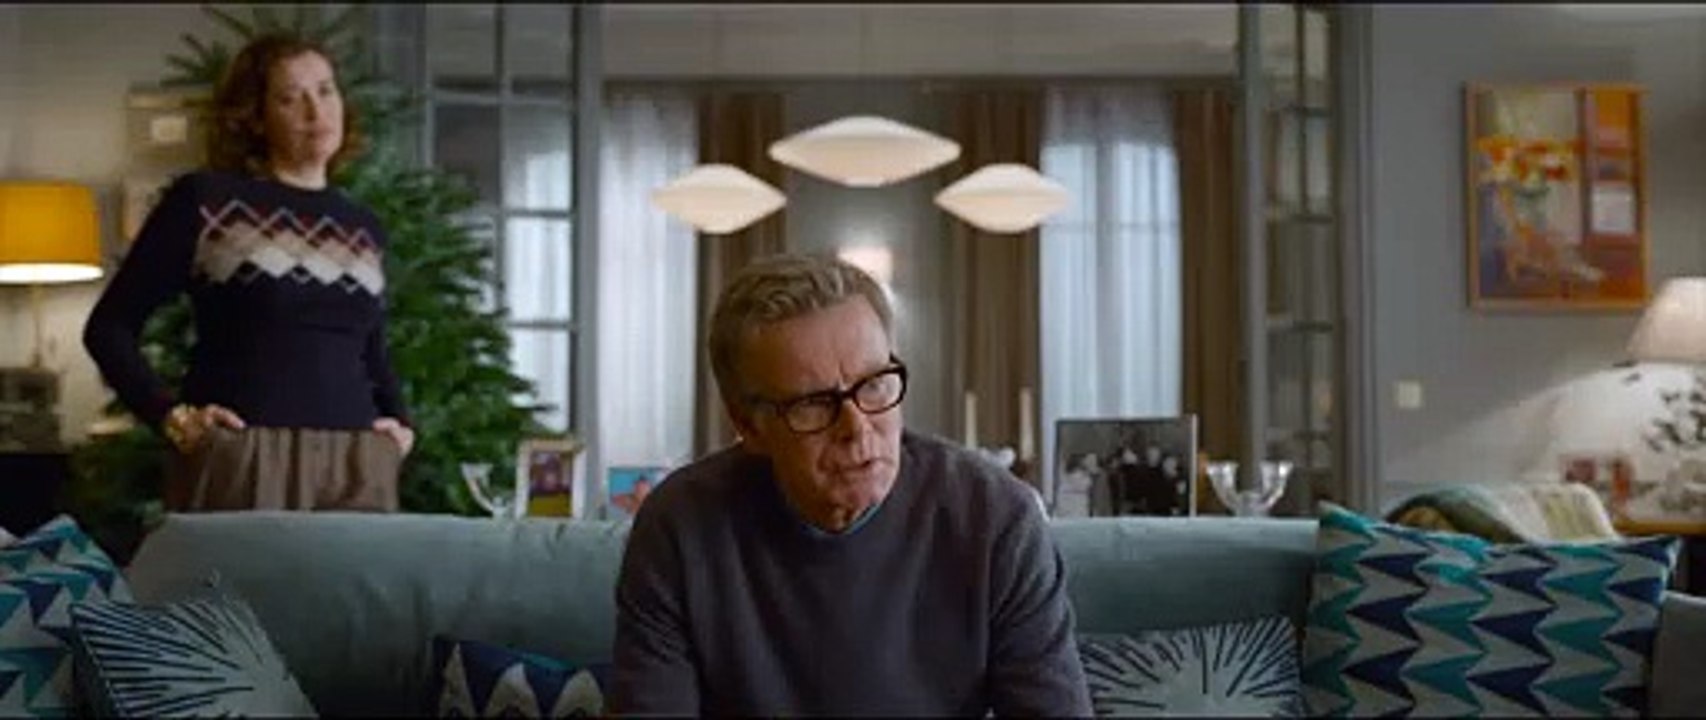 Fast perfekte Weihnachten Film Trailer